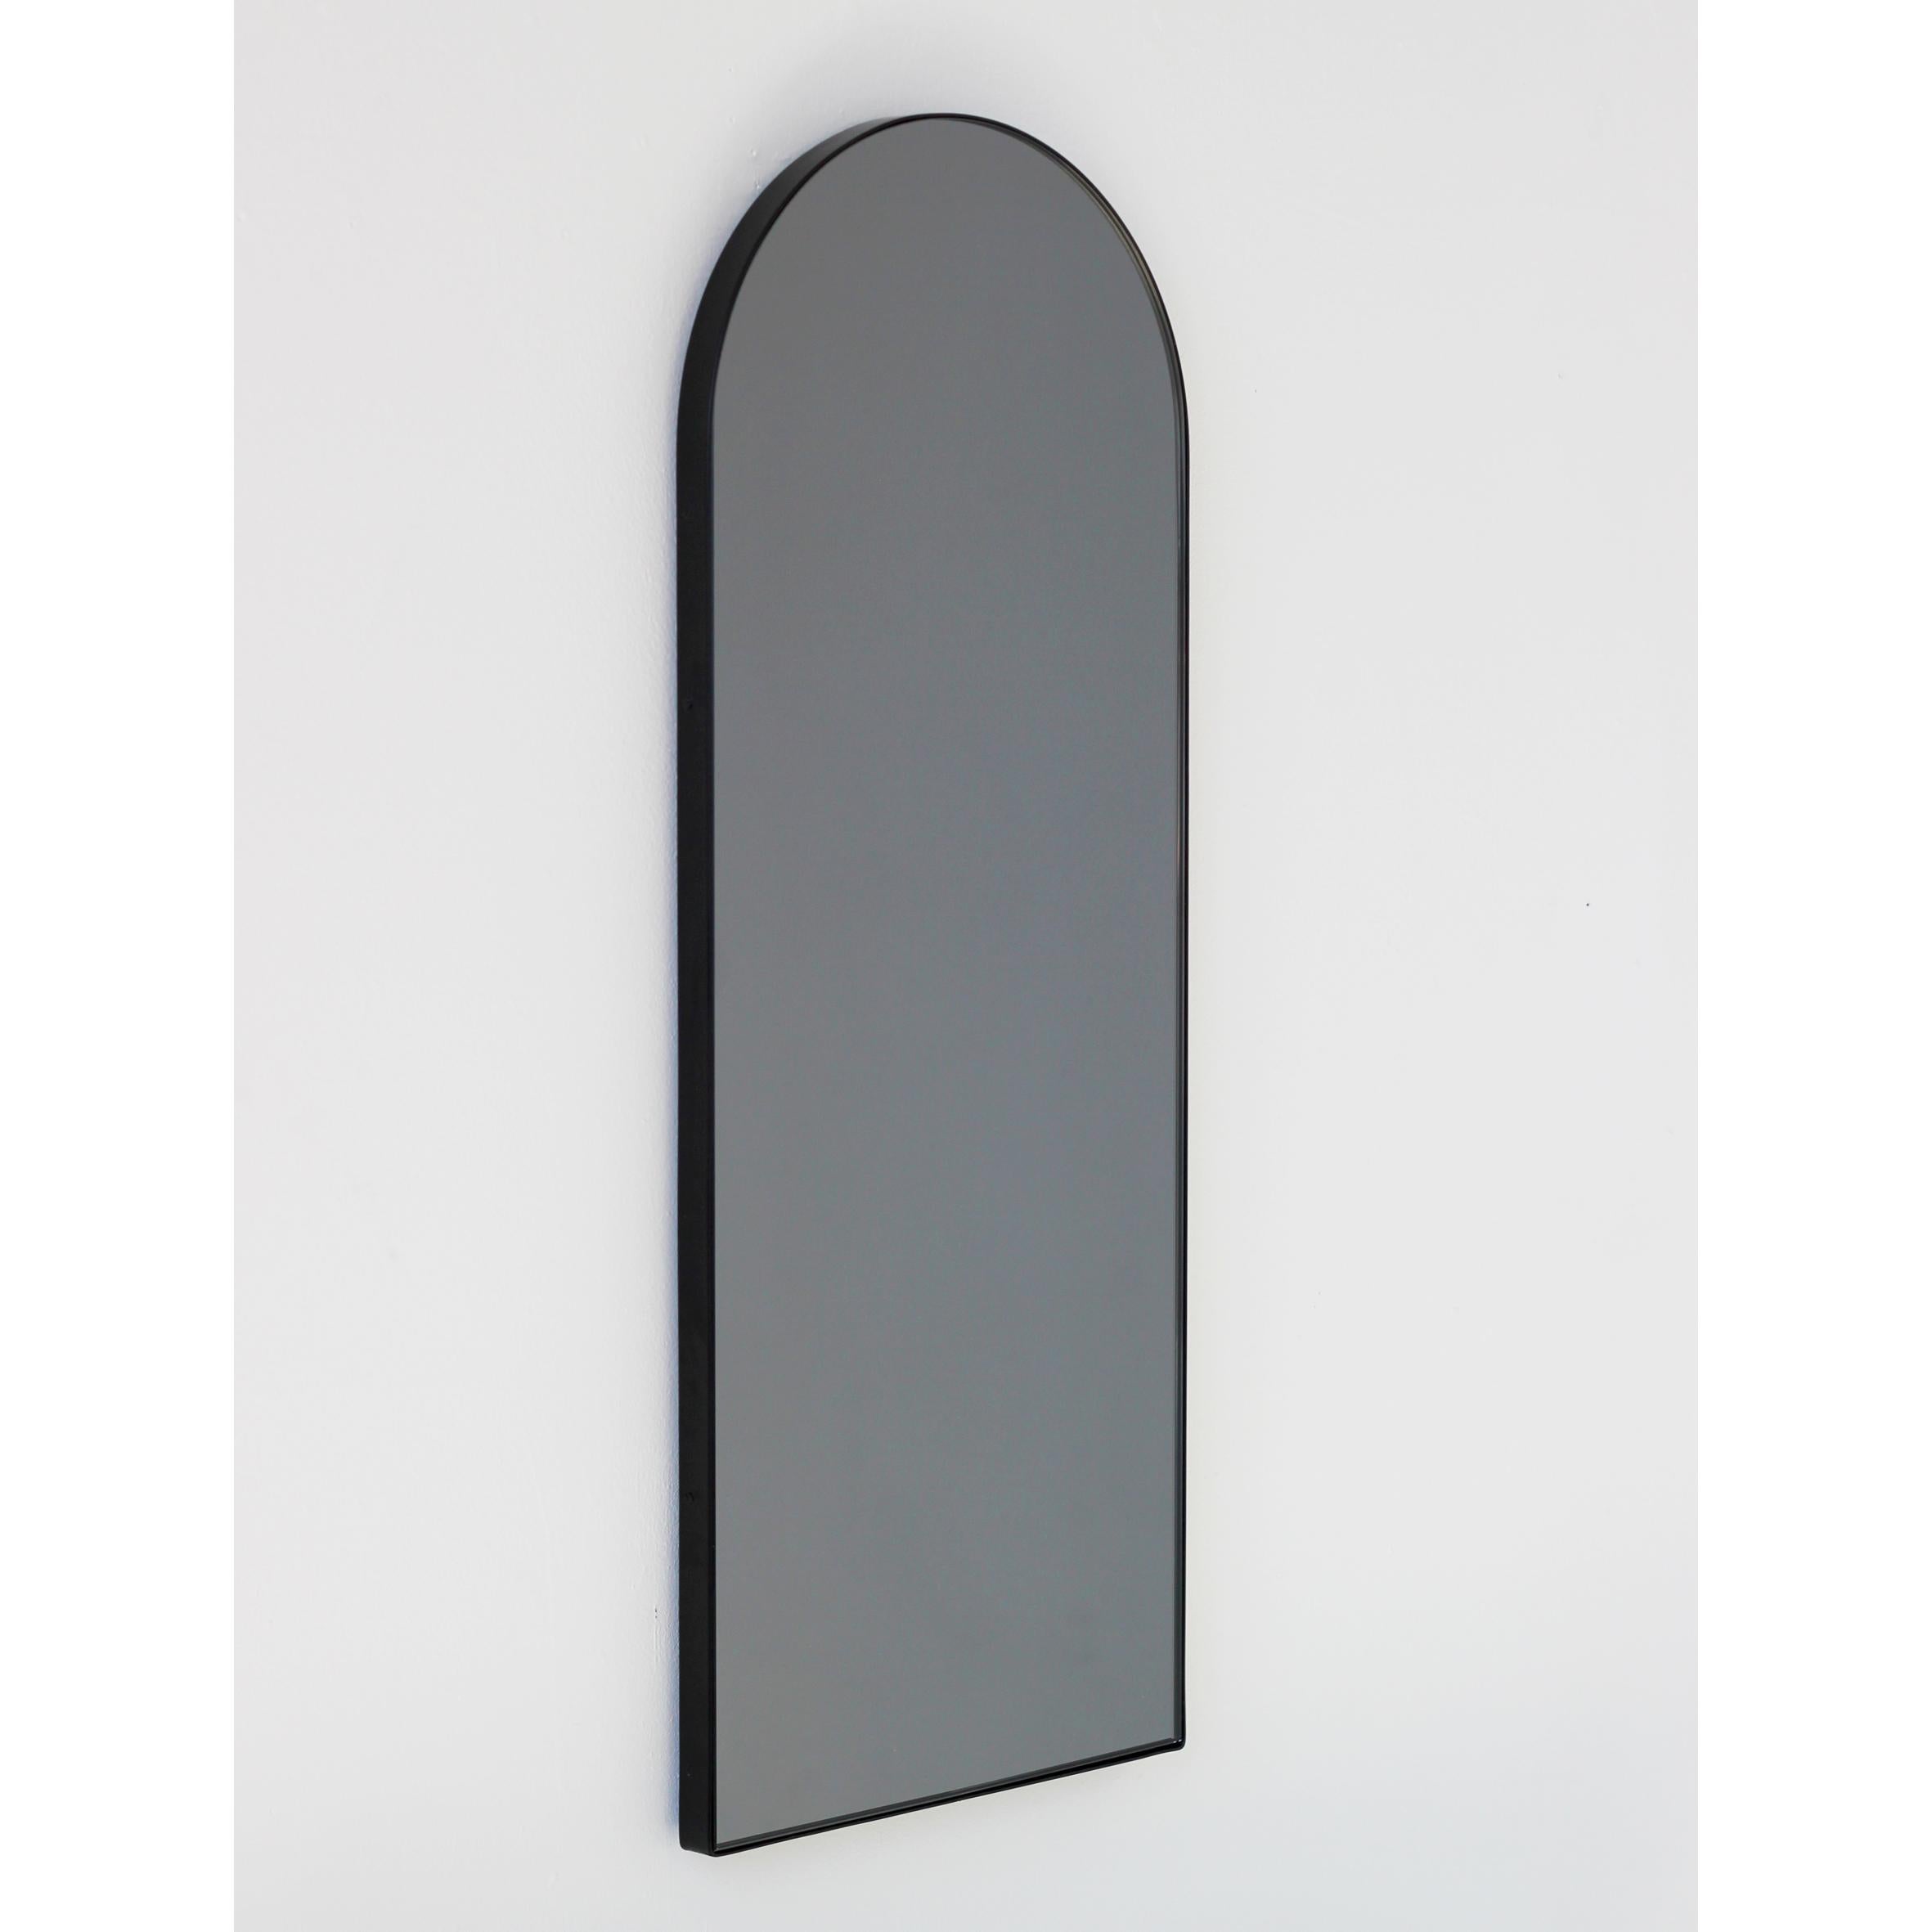 Moderner bogenförmiger, schwarz getönter Spiegel mit elegantem schwarzem Rahmen. Entworfen und handgefertigt in London, UK.

Die mittelgroßen, großen und extragroßen Spiegel (37 cm x 56 cm, 46 cm x 71 cm und 48 cm x 97 cm) sind mit einem